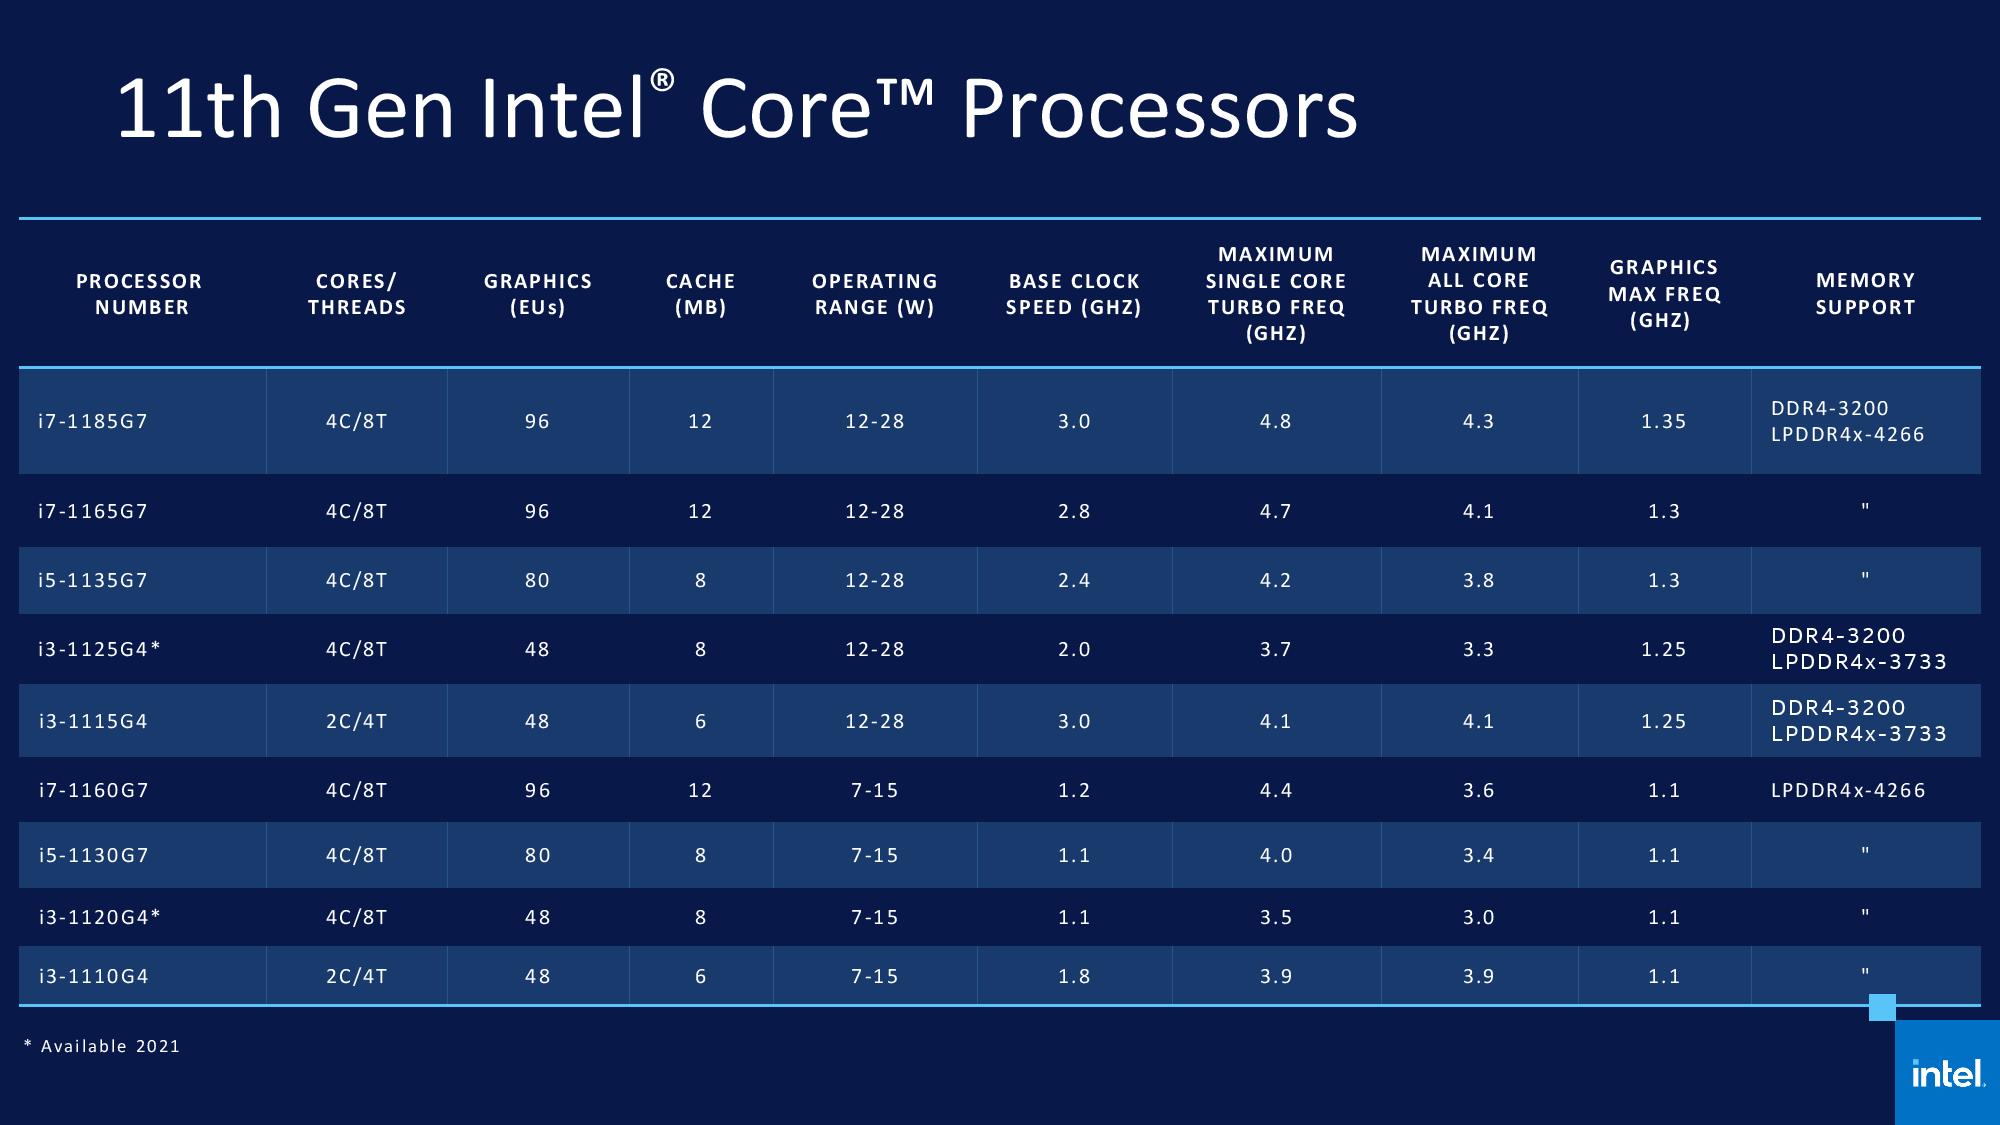 Intel Quad Core Chart